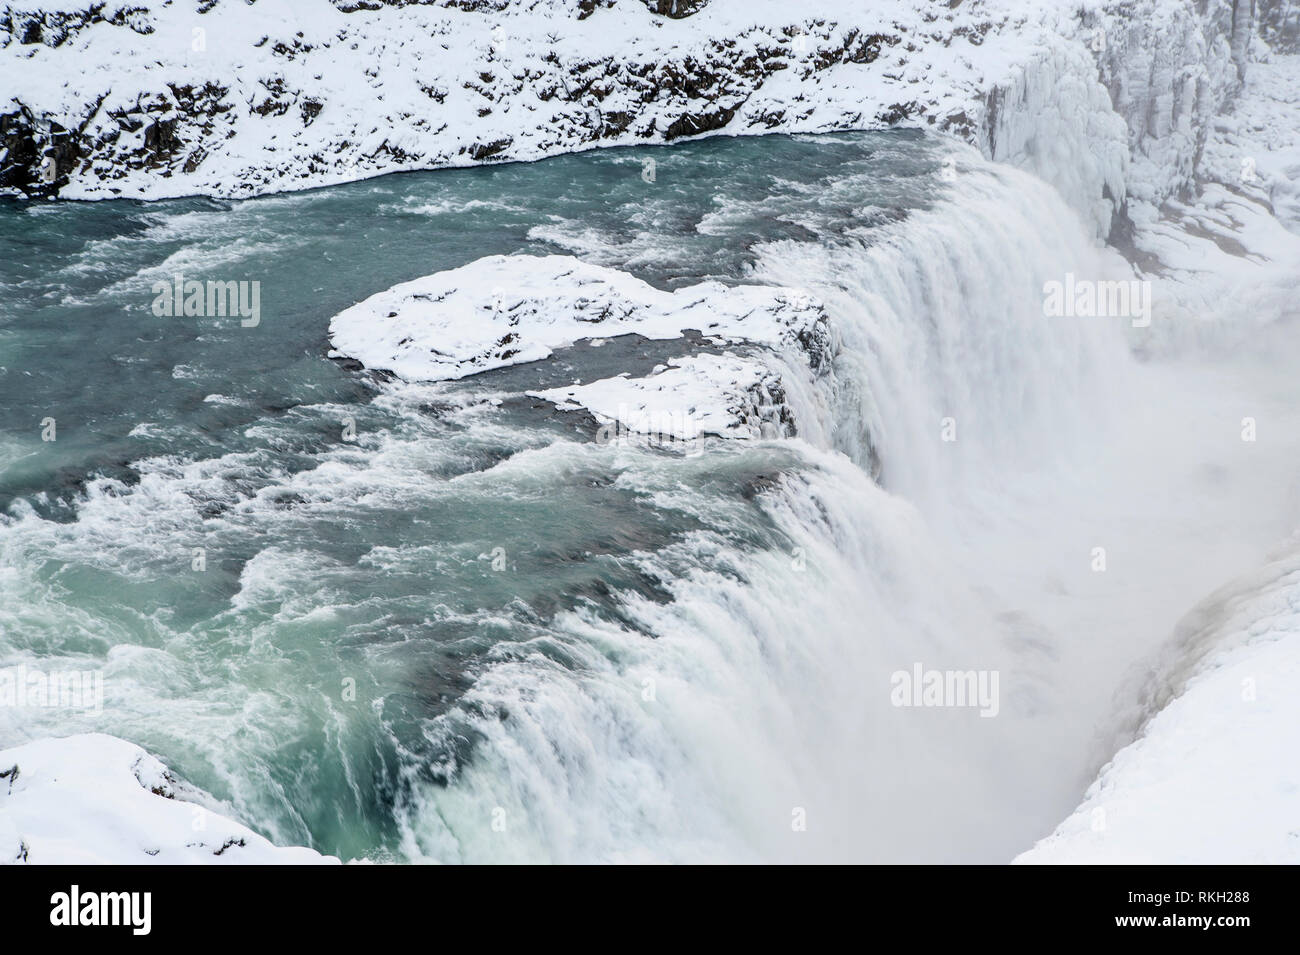 Islanda: Gullfoss (cascata dorata) è un iconico cascata di Islanda ed offre una vista spettacolare delle forze e la bellezza di una natura incontaminata. Gullf Foto Stock